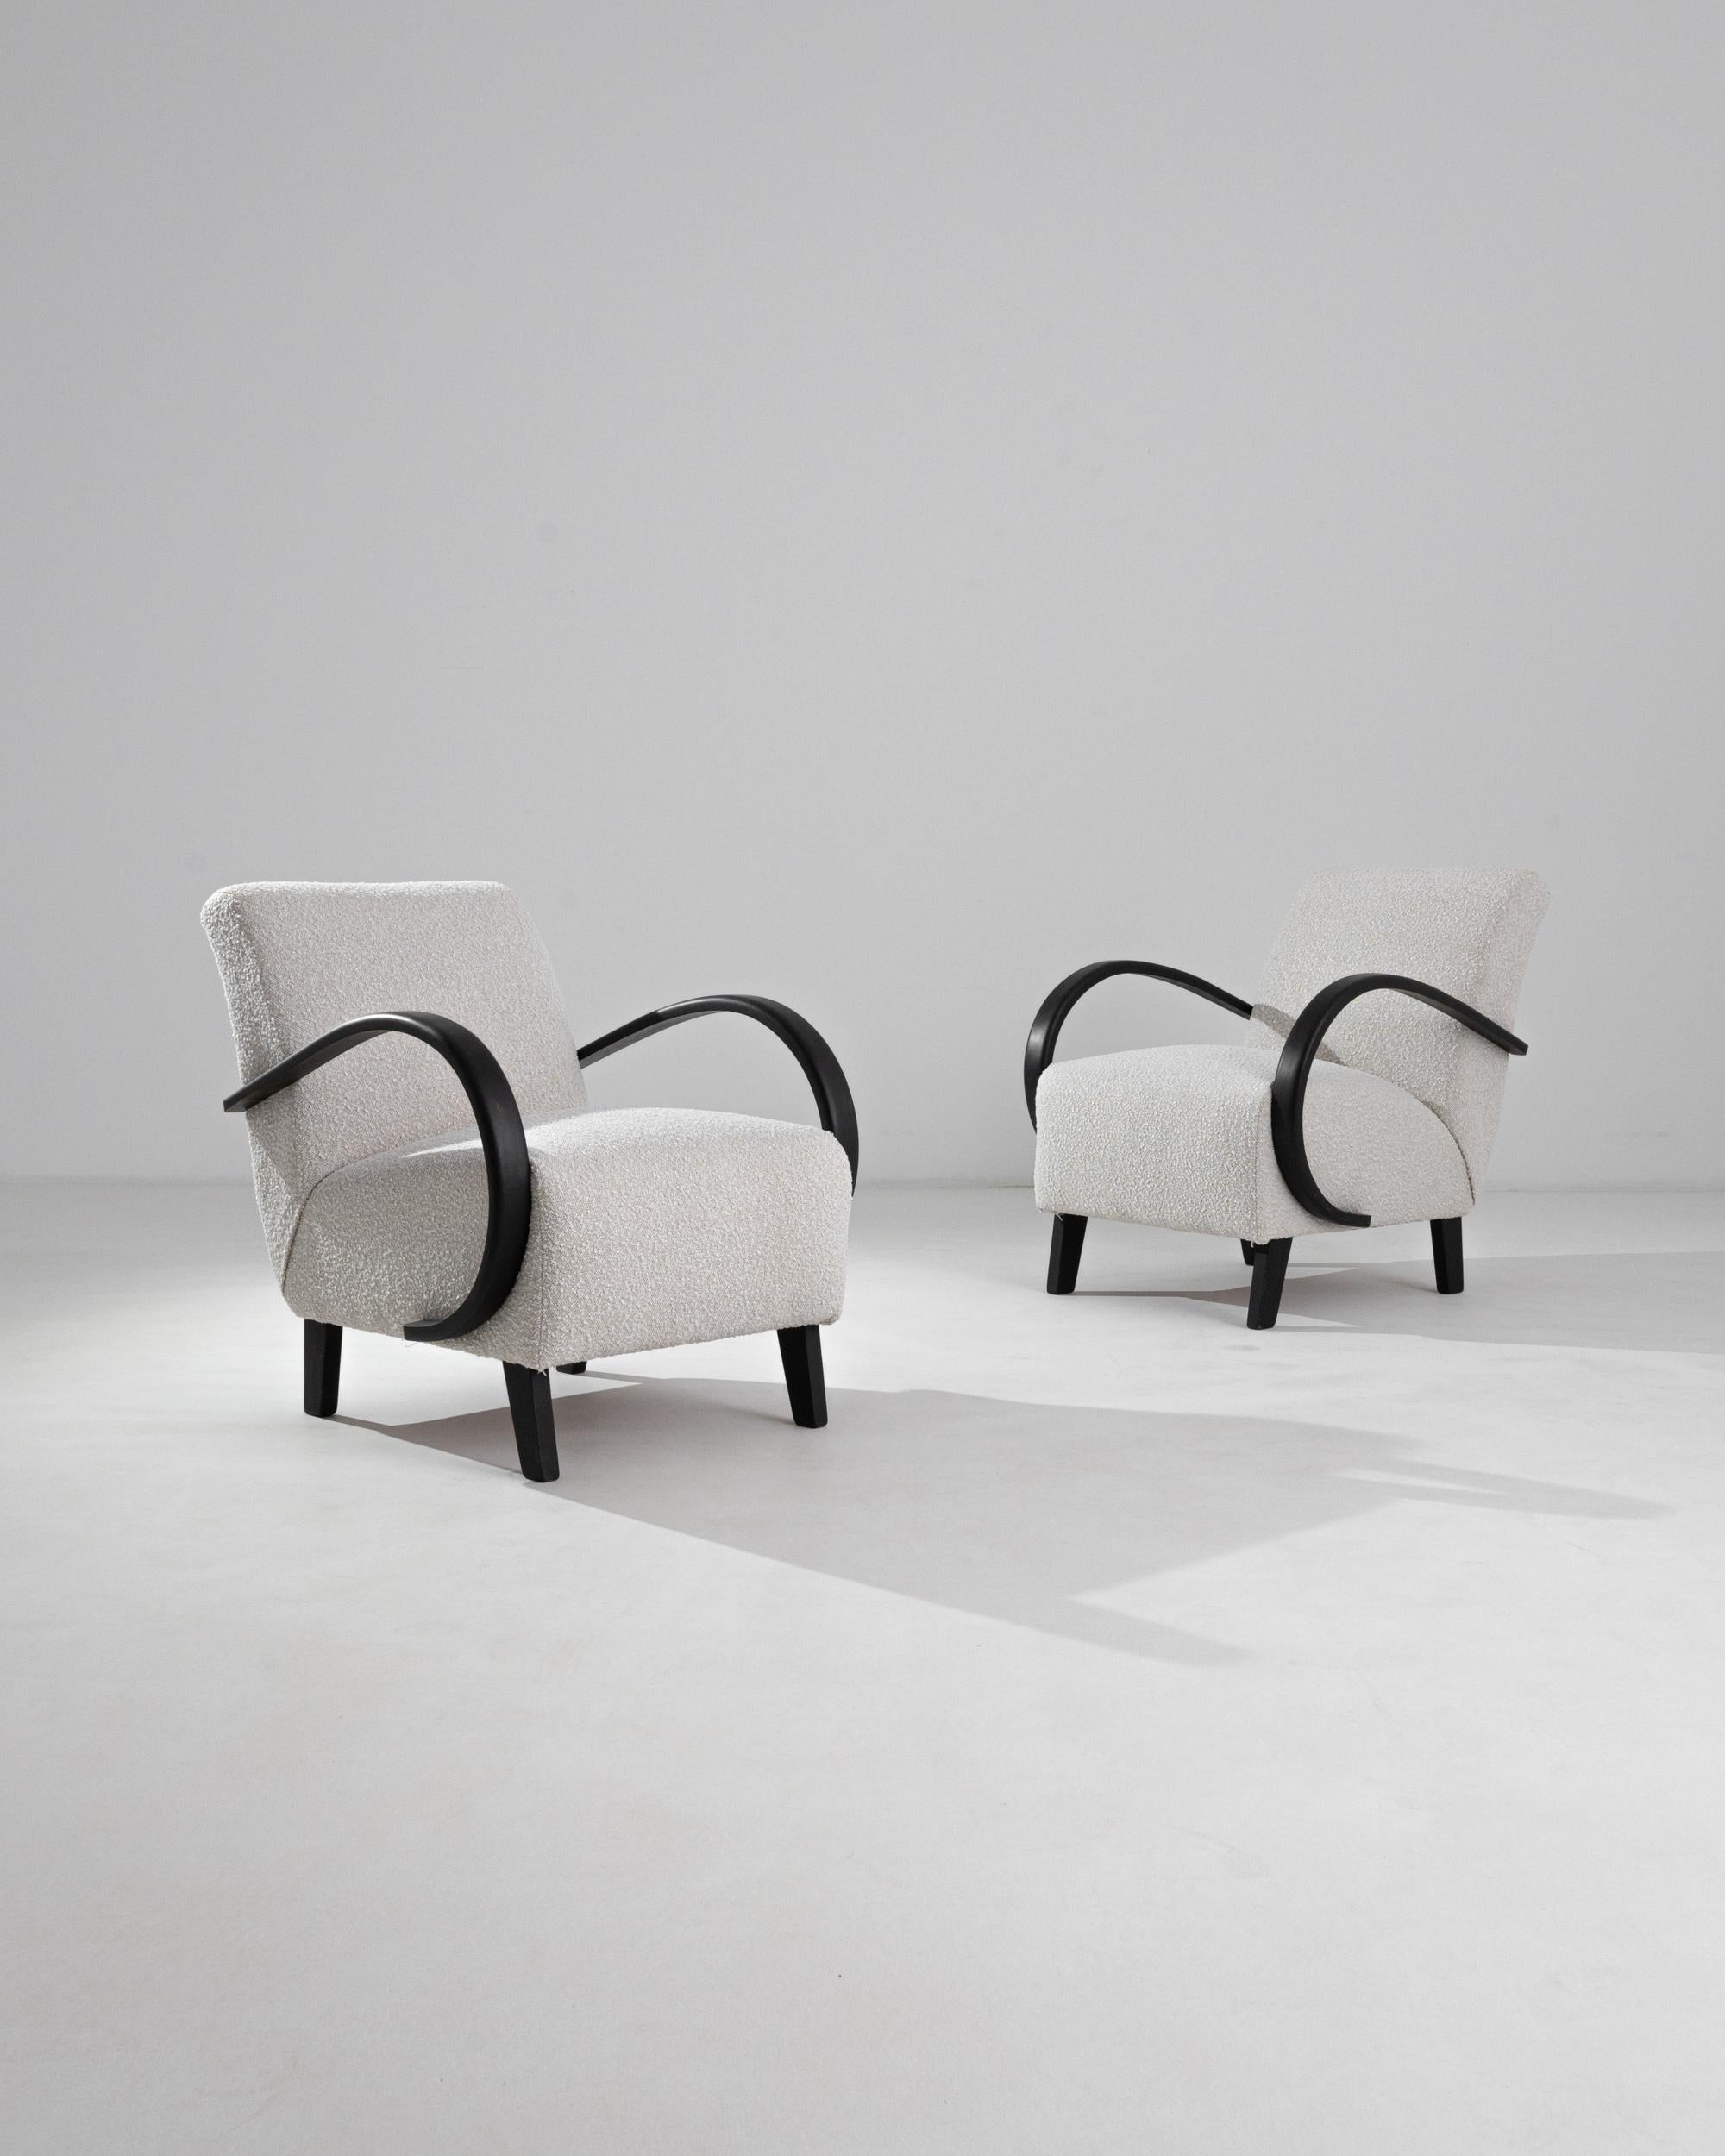 Klassisches schwarzes Bugholz kombiniert mit neu gepolstertem weißem Bouclé in diesem ikonischen Design von J. Halabala. Die geschwungenen Beine des Stuhls und die Armlehnen aus Bugholz machen die Dynamik des Stücks aus. Ein zeitgenössischer Stoff